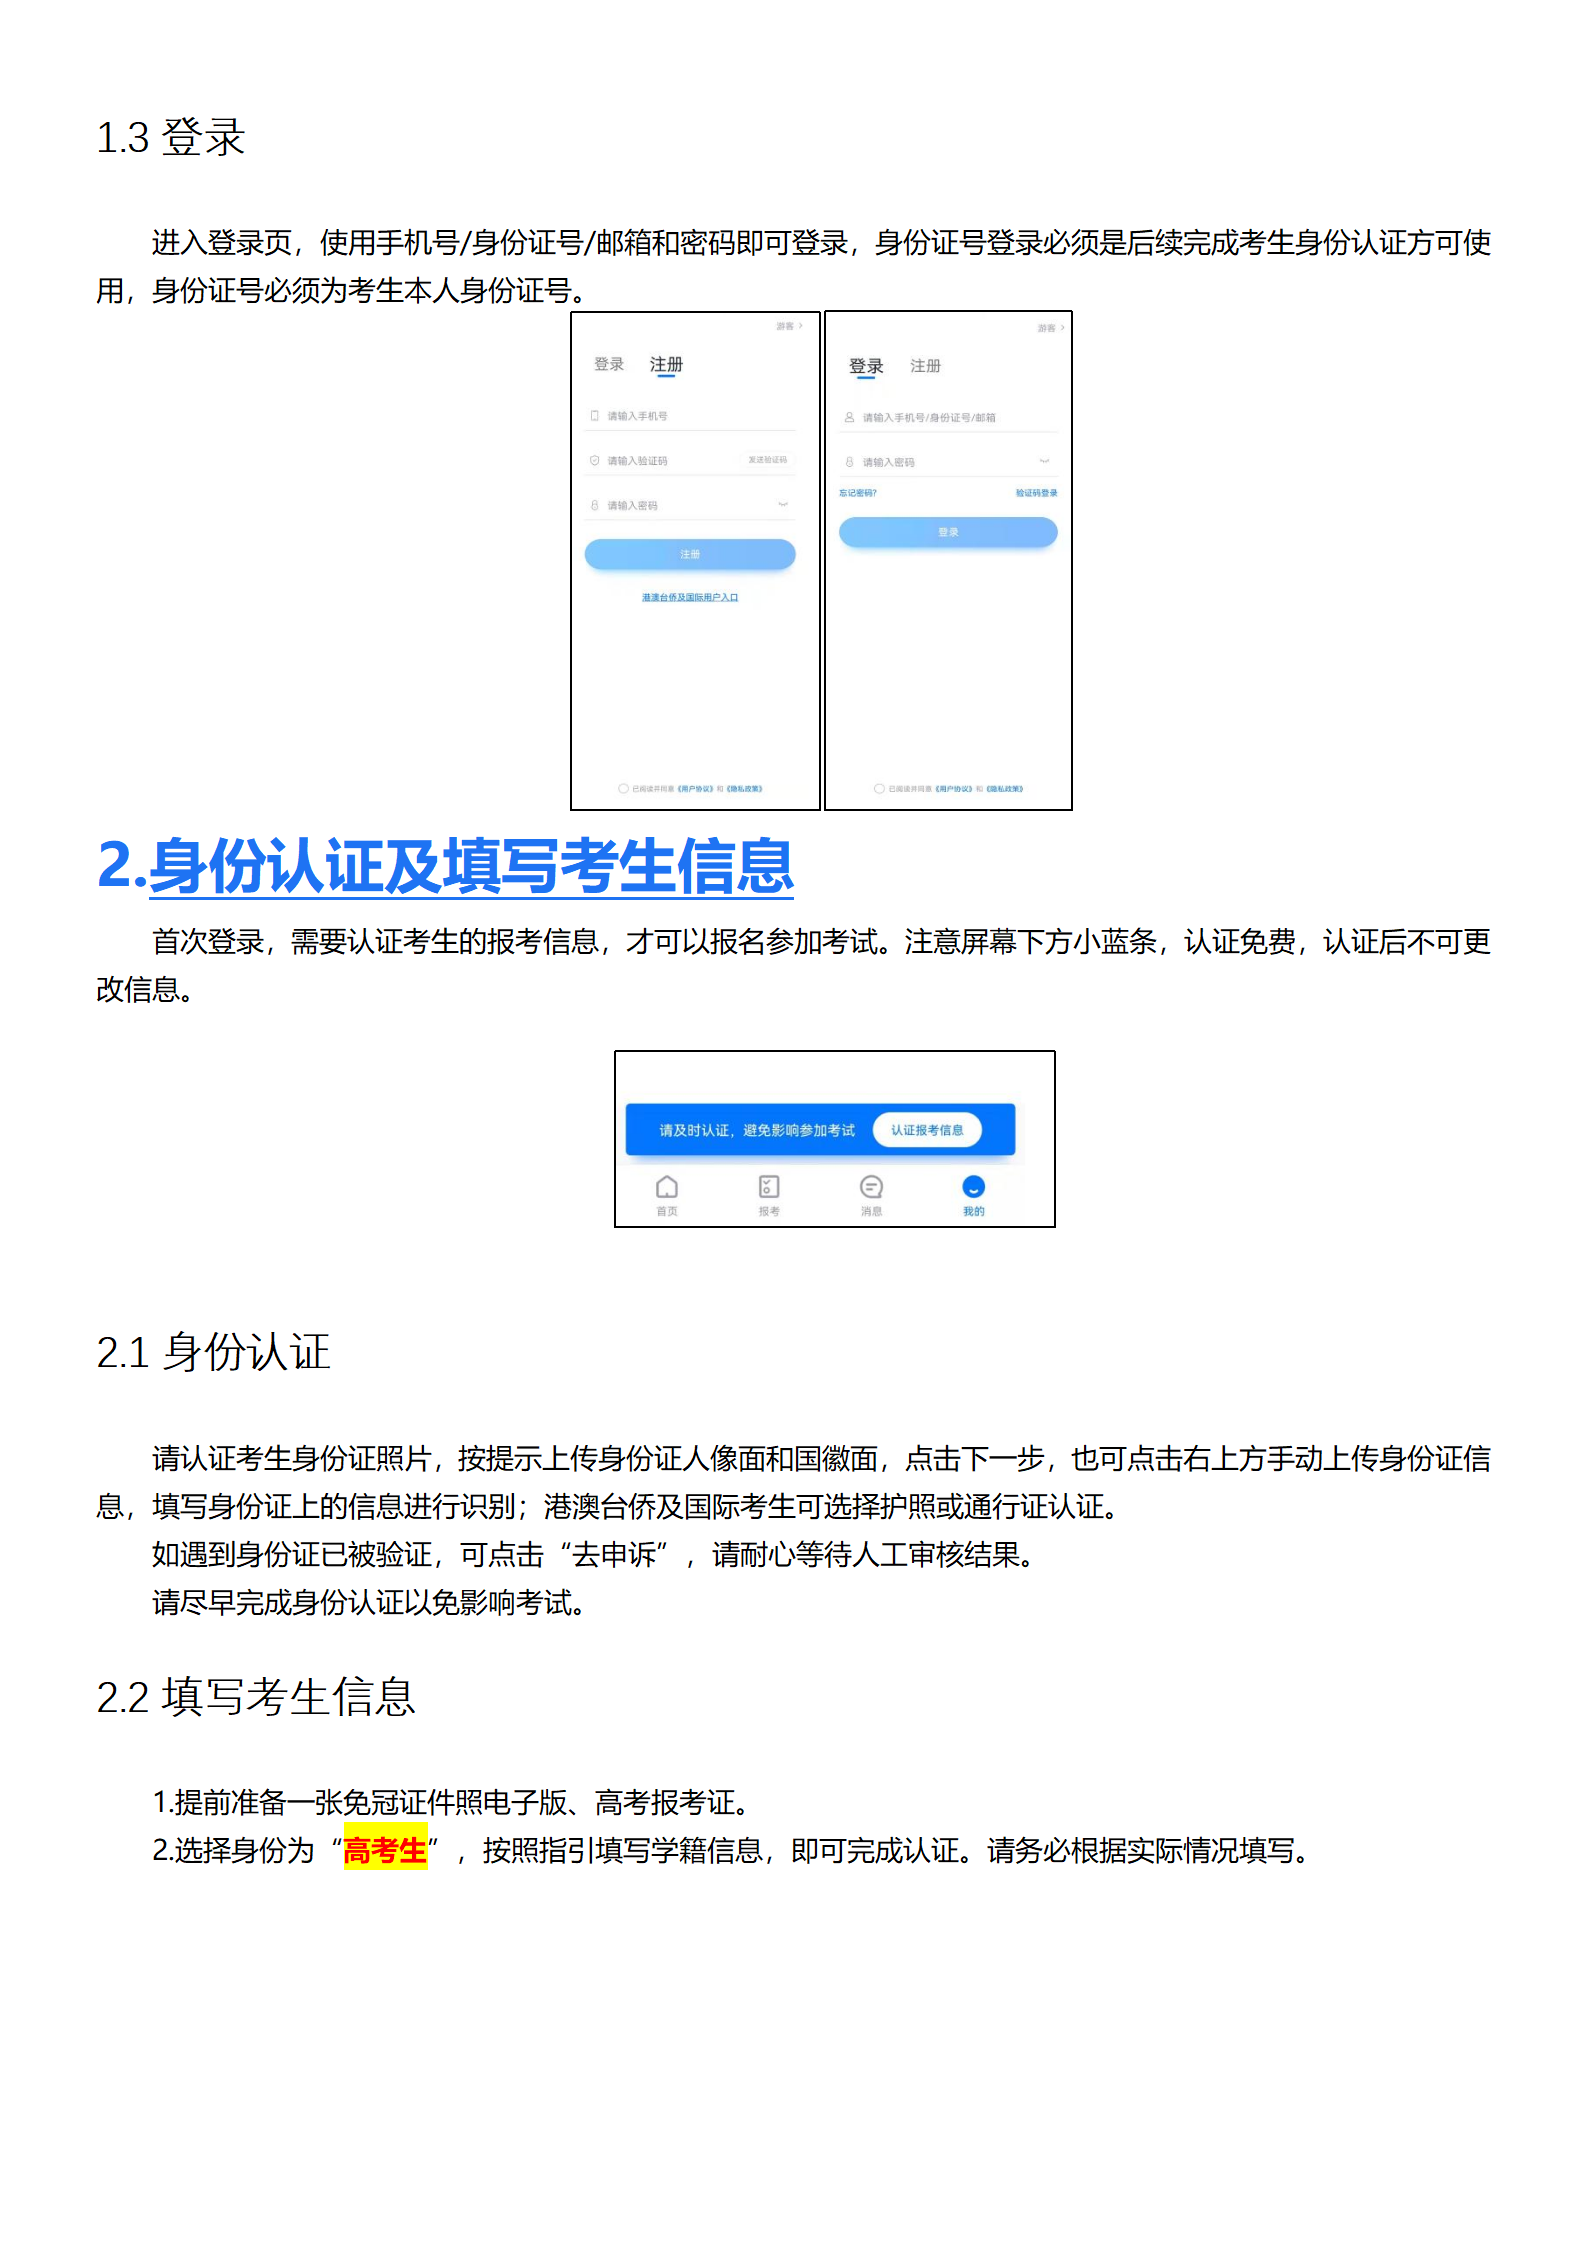 附件1：深圳大学-小艺帮4.0用户操作手册_03.png